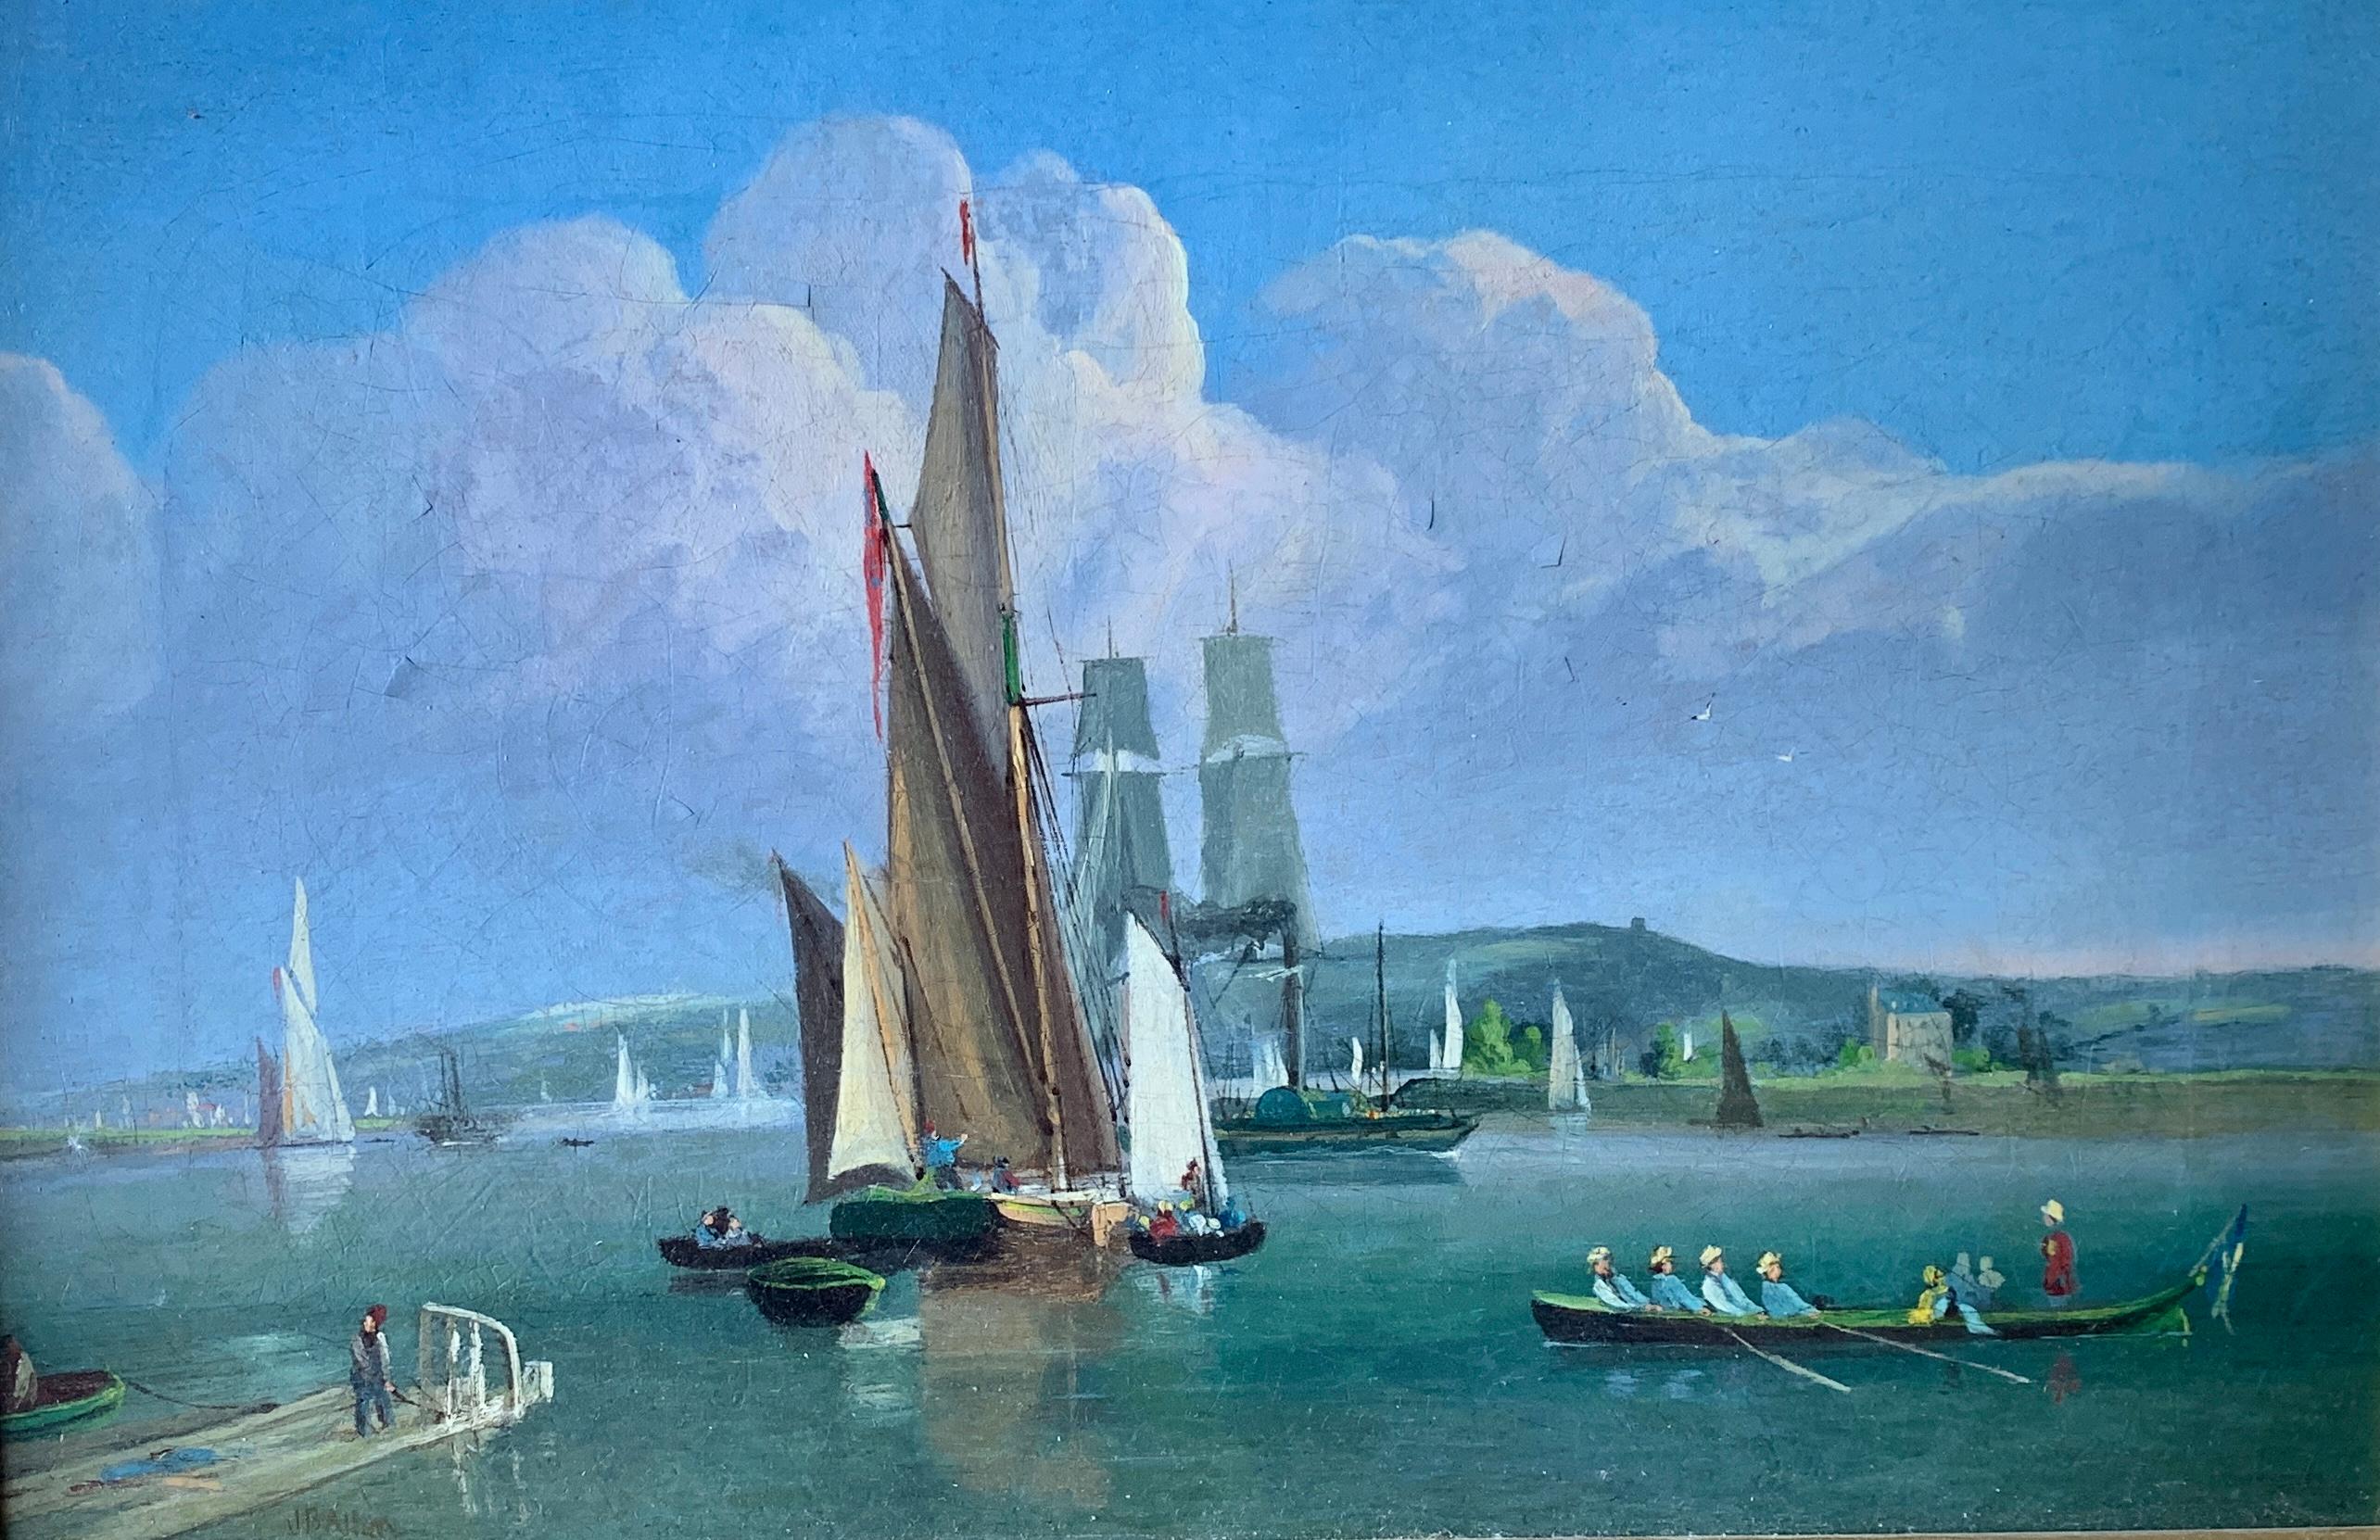 Des bateaux anglais du 19ème siècle sur une rivière avec des voiliers, des balanciers et un bateau à bascule - Painting de Unknown